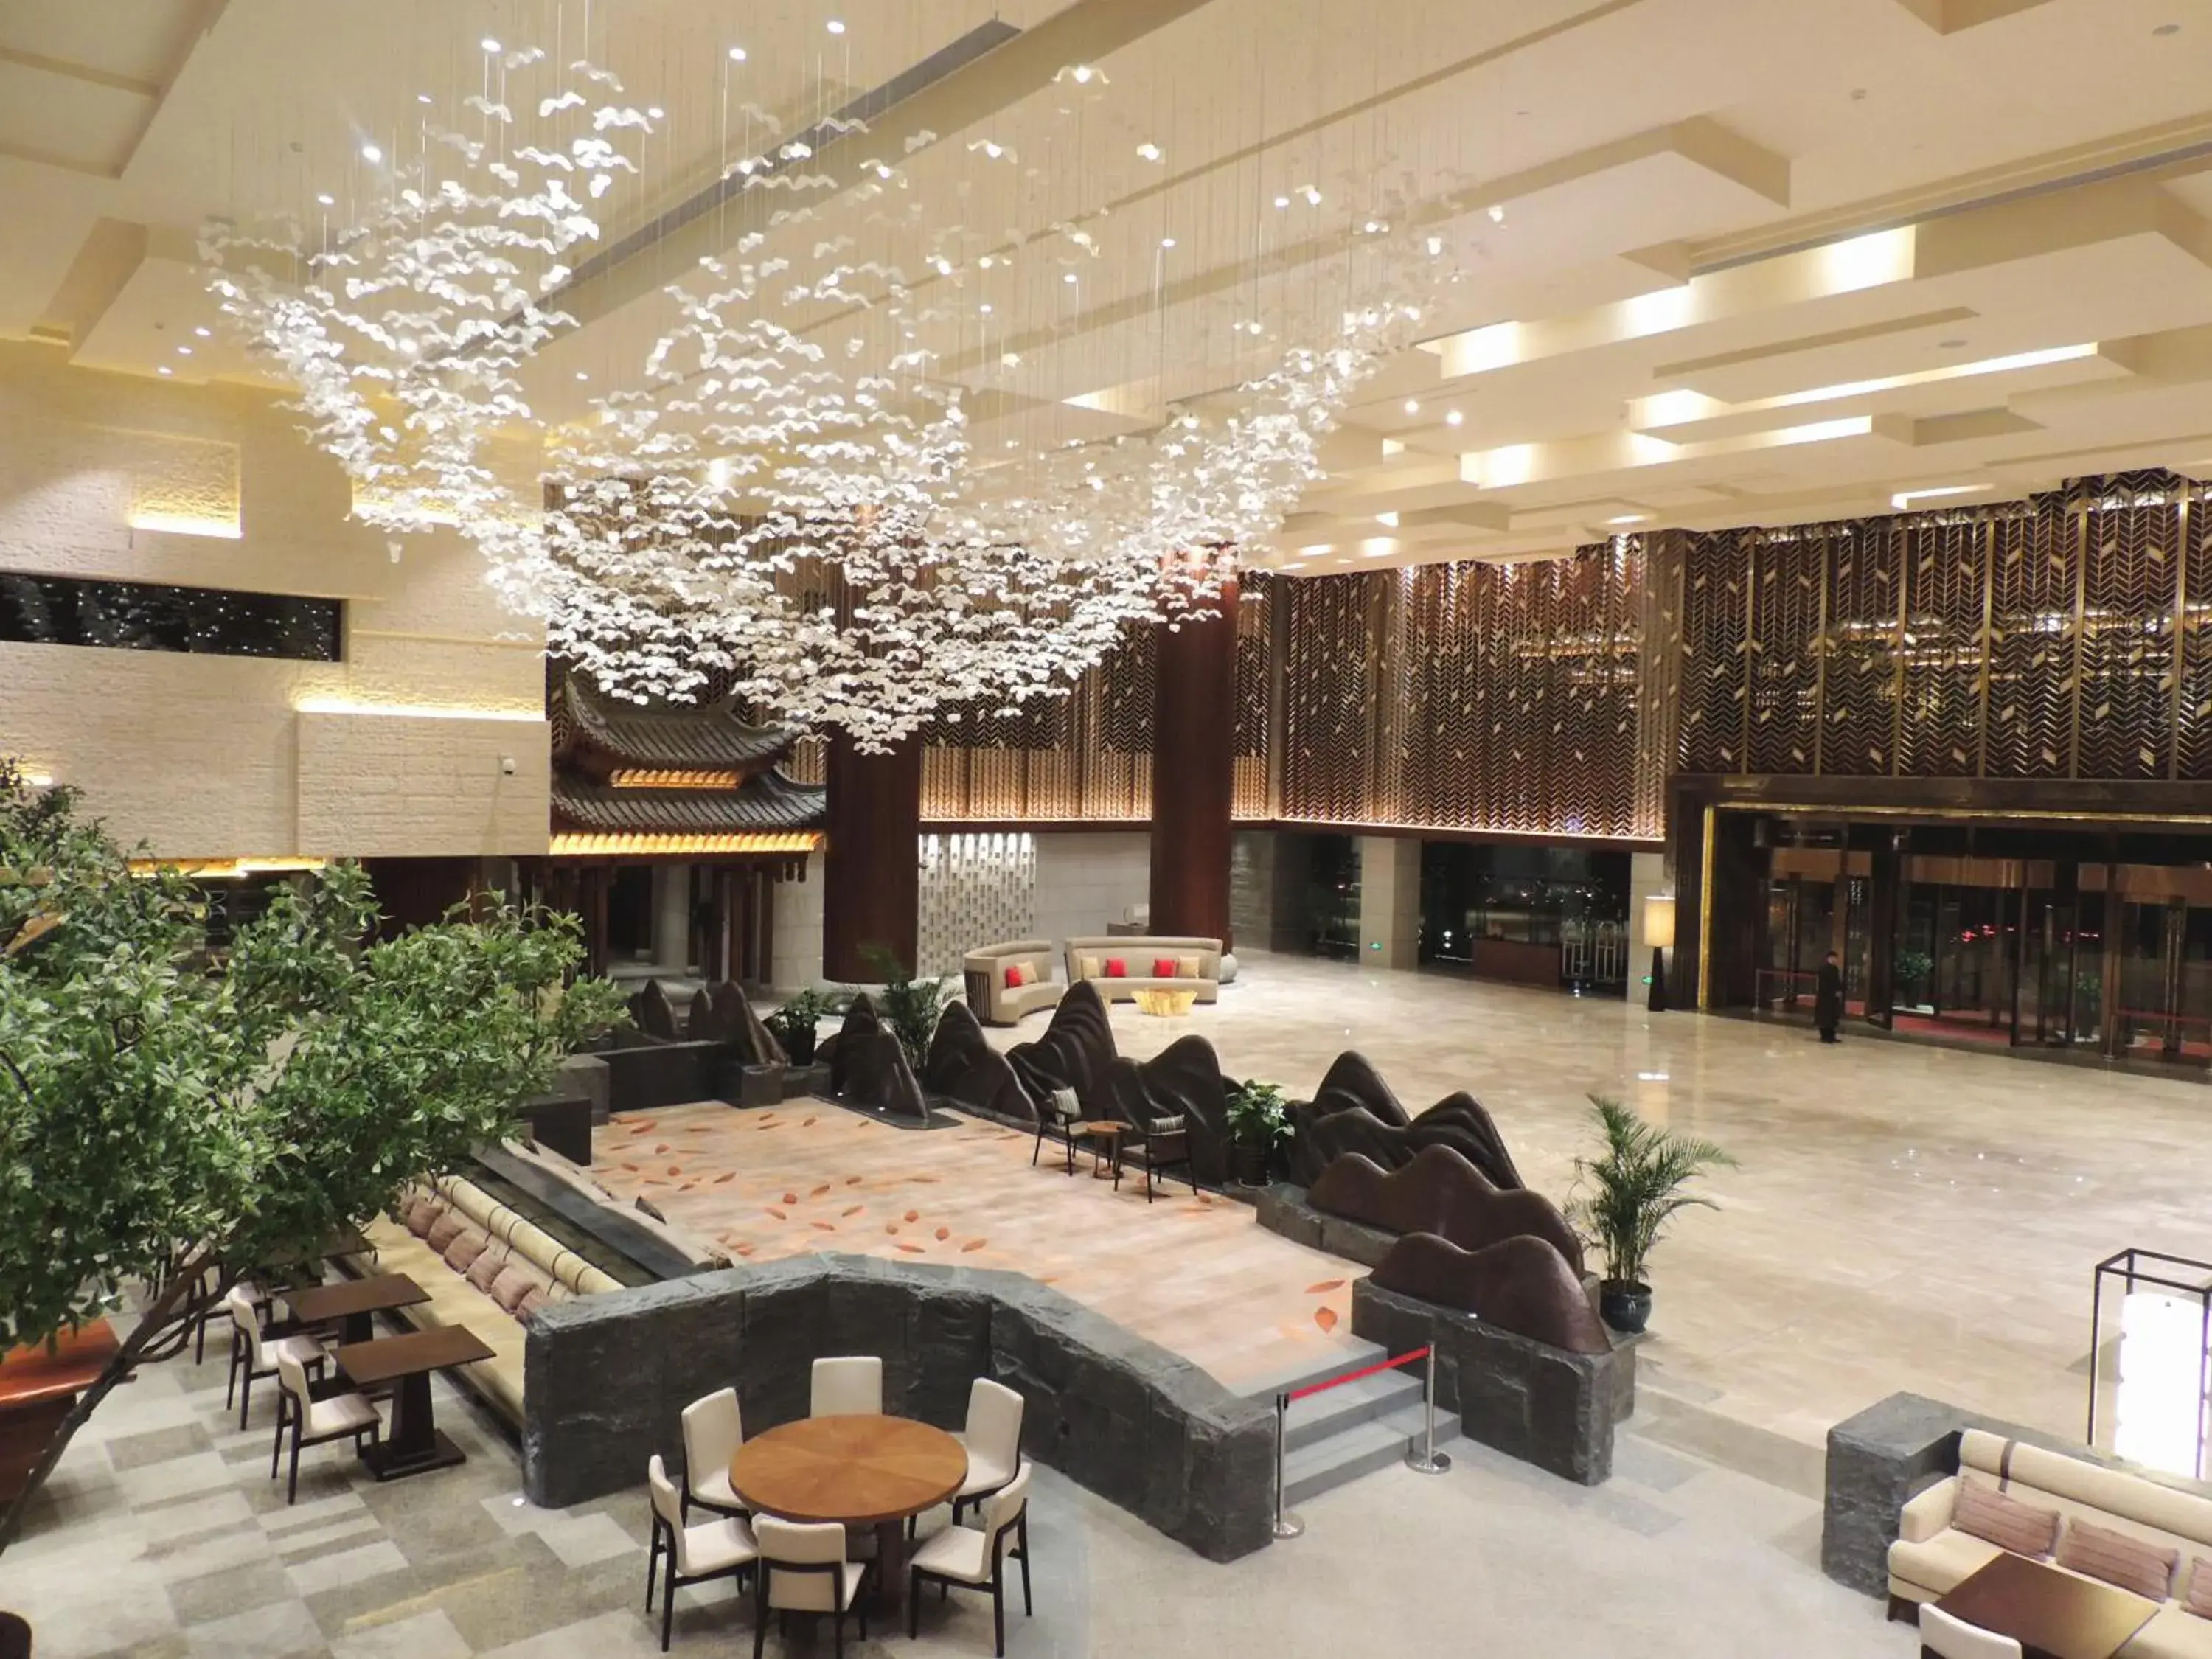 Lobby or reception in Neodalle Zhangjiajie Wulingyuan